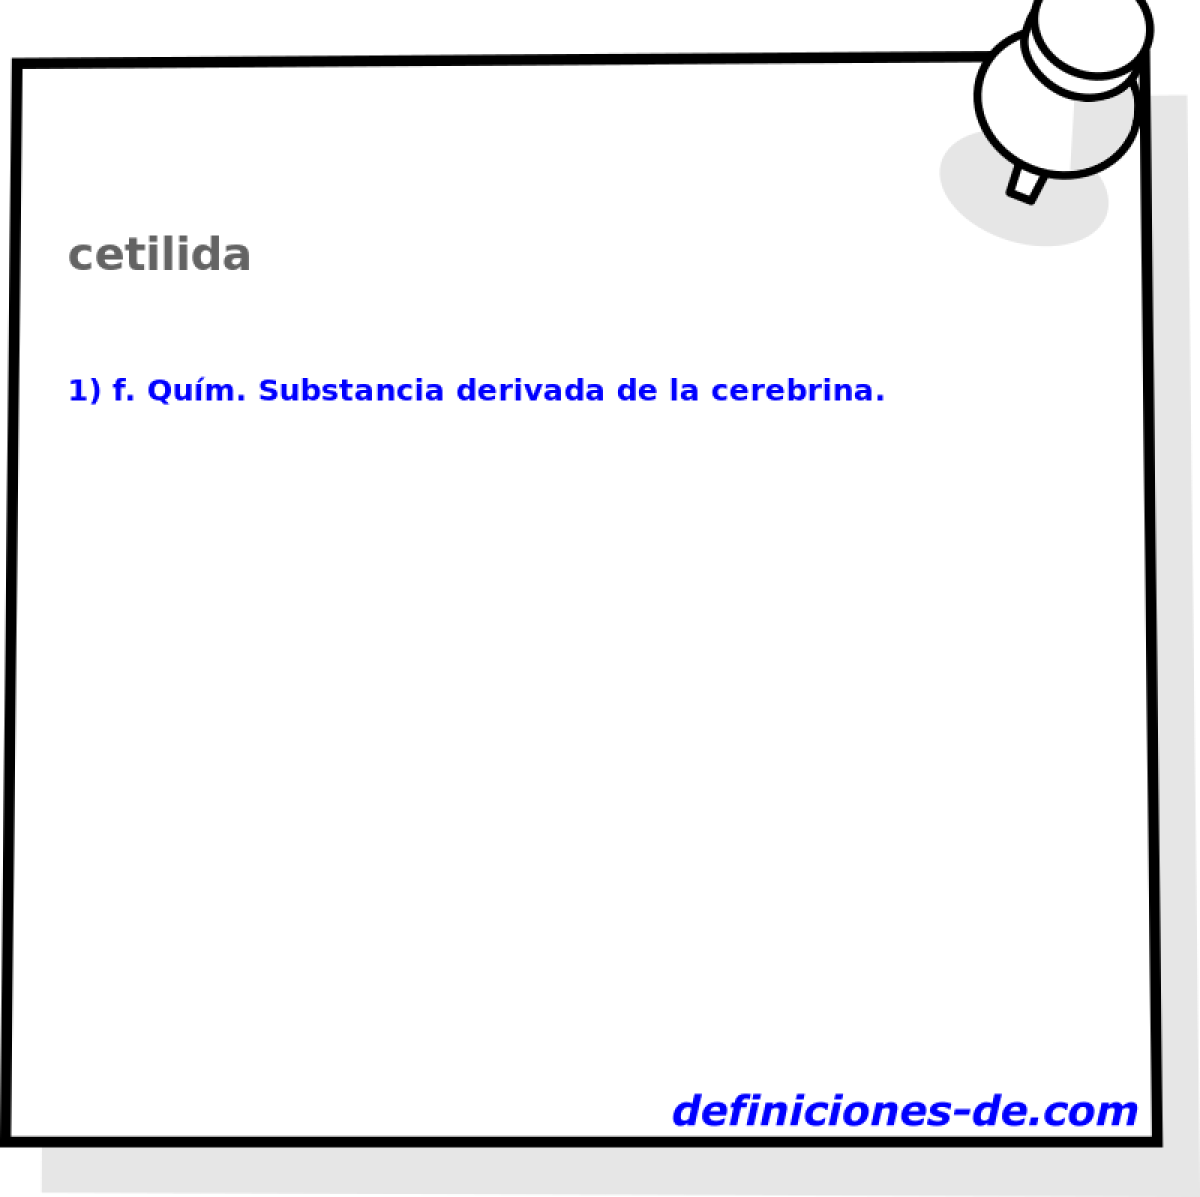 cetilida 